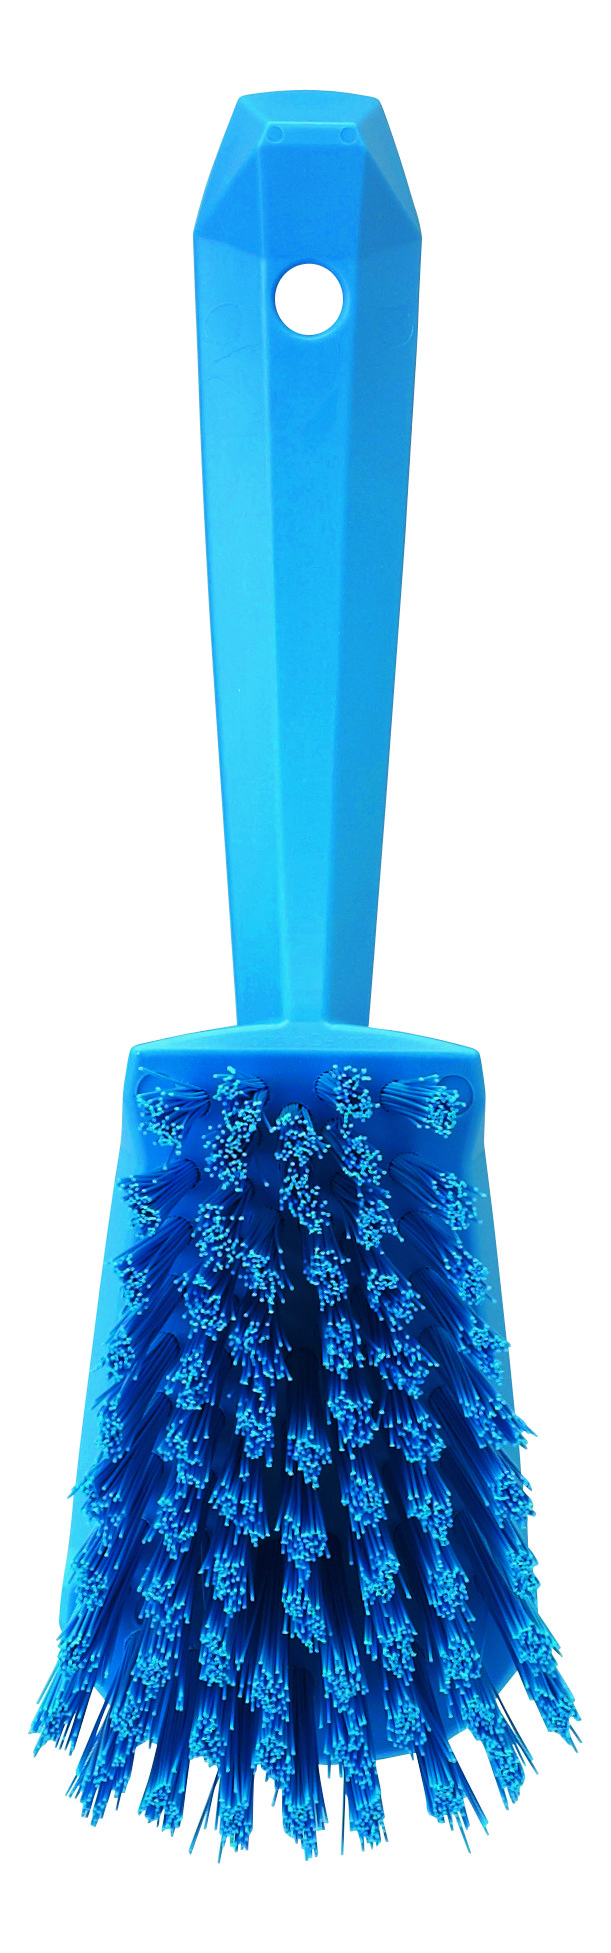 Щетка Vikan ручная для мытья с короткой ручкой жесткая, 270 мм, синяя